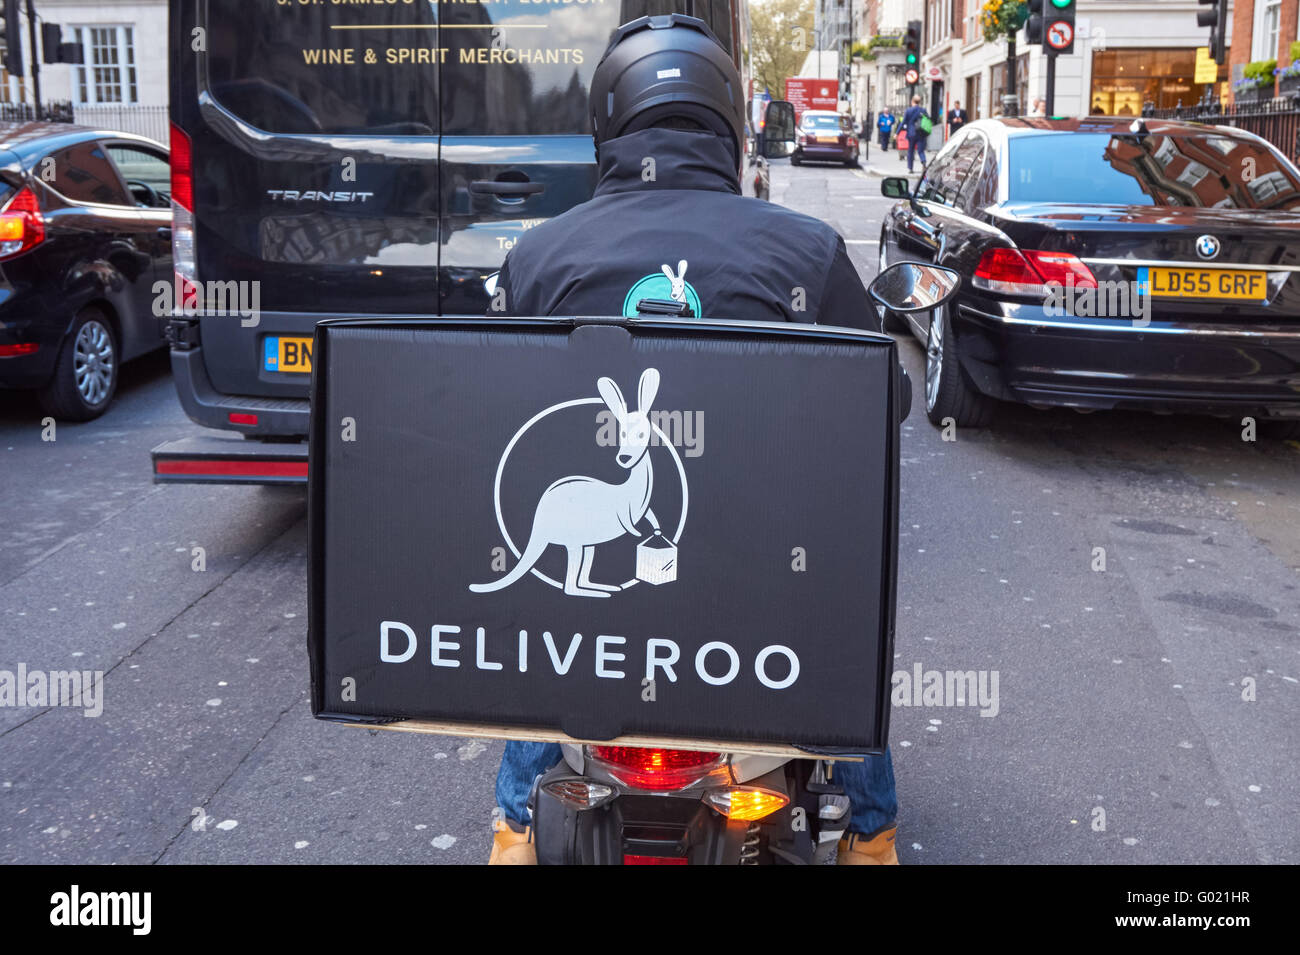 Consegna Deliveroo uomo, Londra Inghilterra Regno Unito Regno Unito Foto Stock